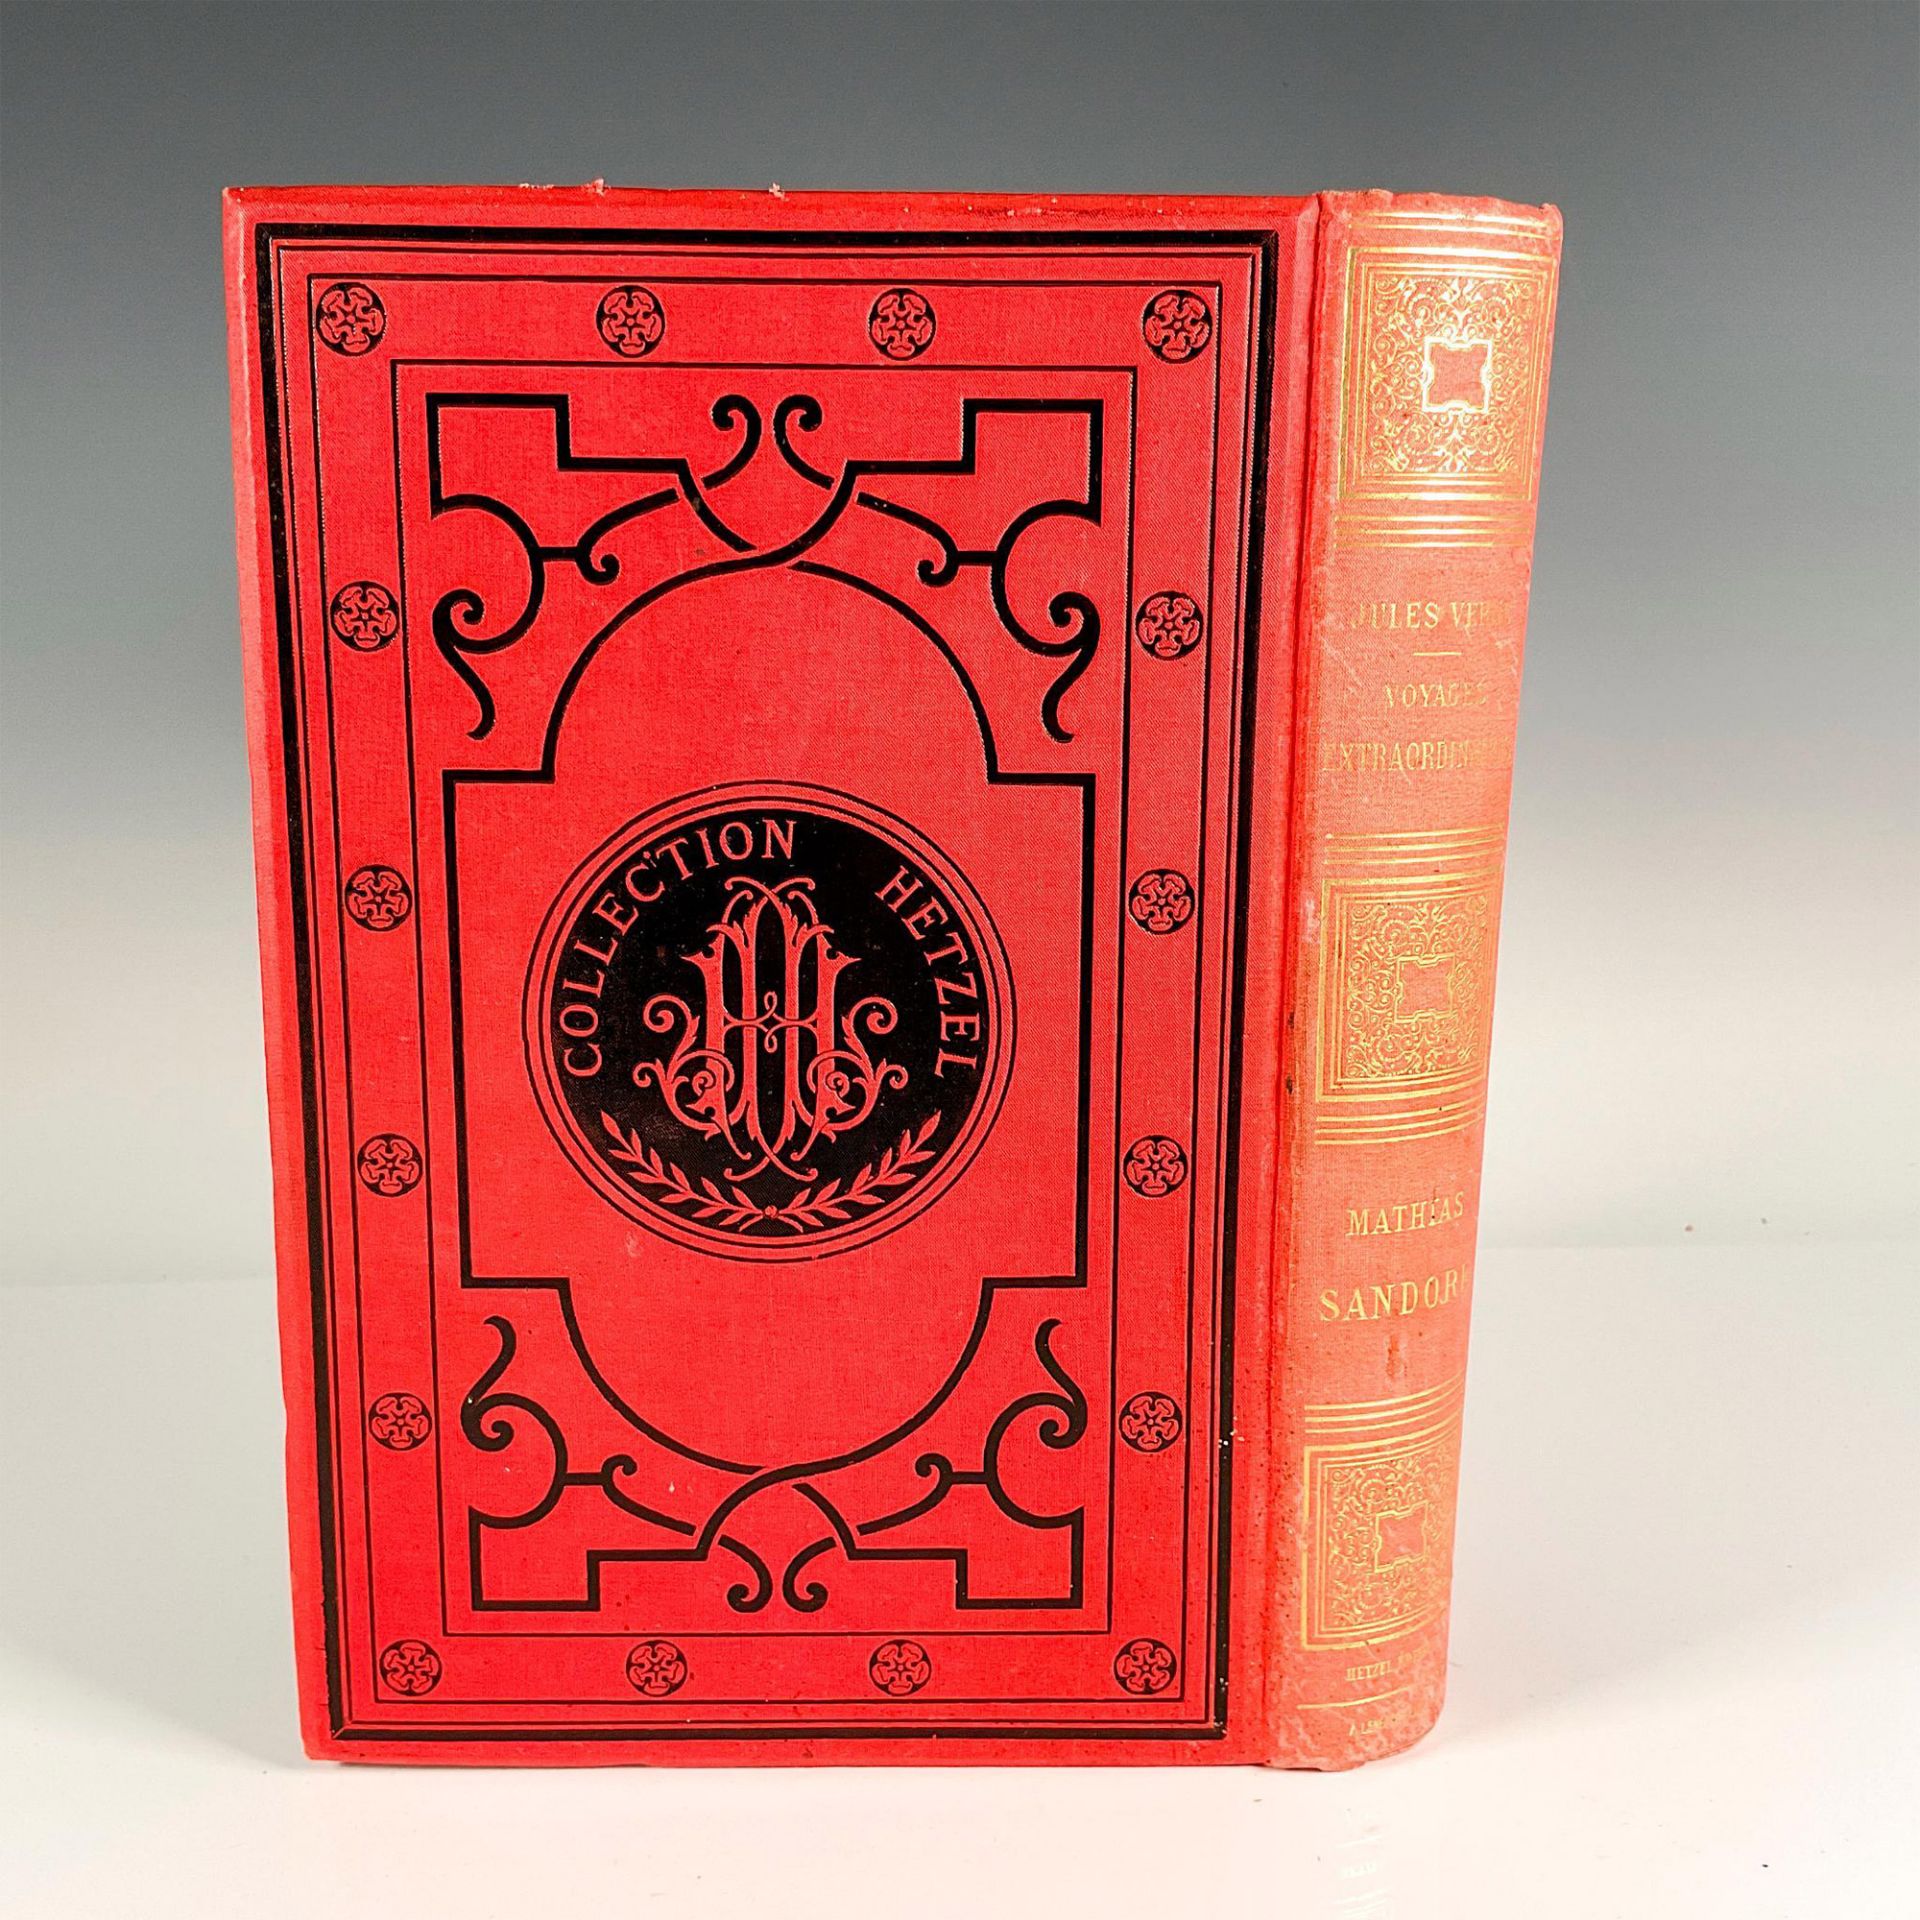 Jules Verne, Mathias Sandorf, A La Banniere, Red Cover - Image 3 of 4